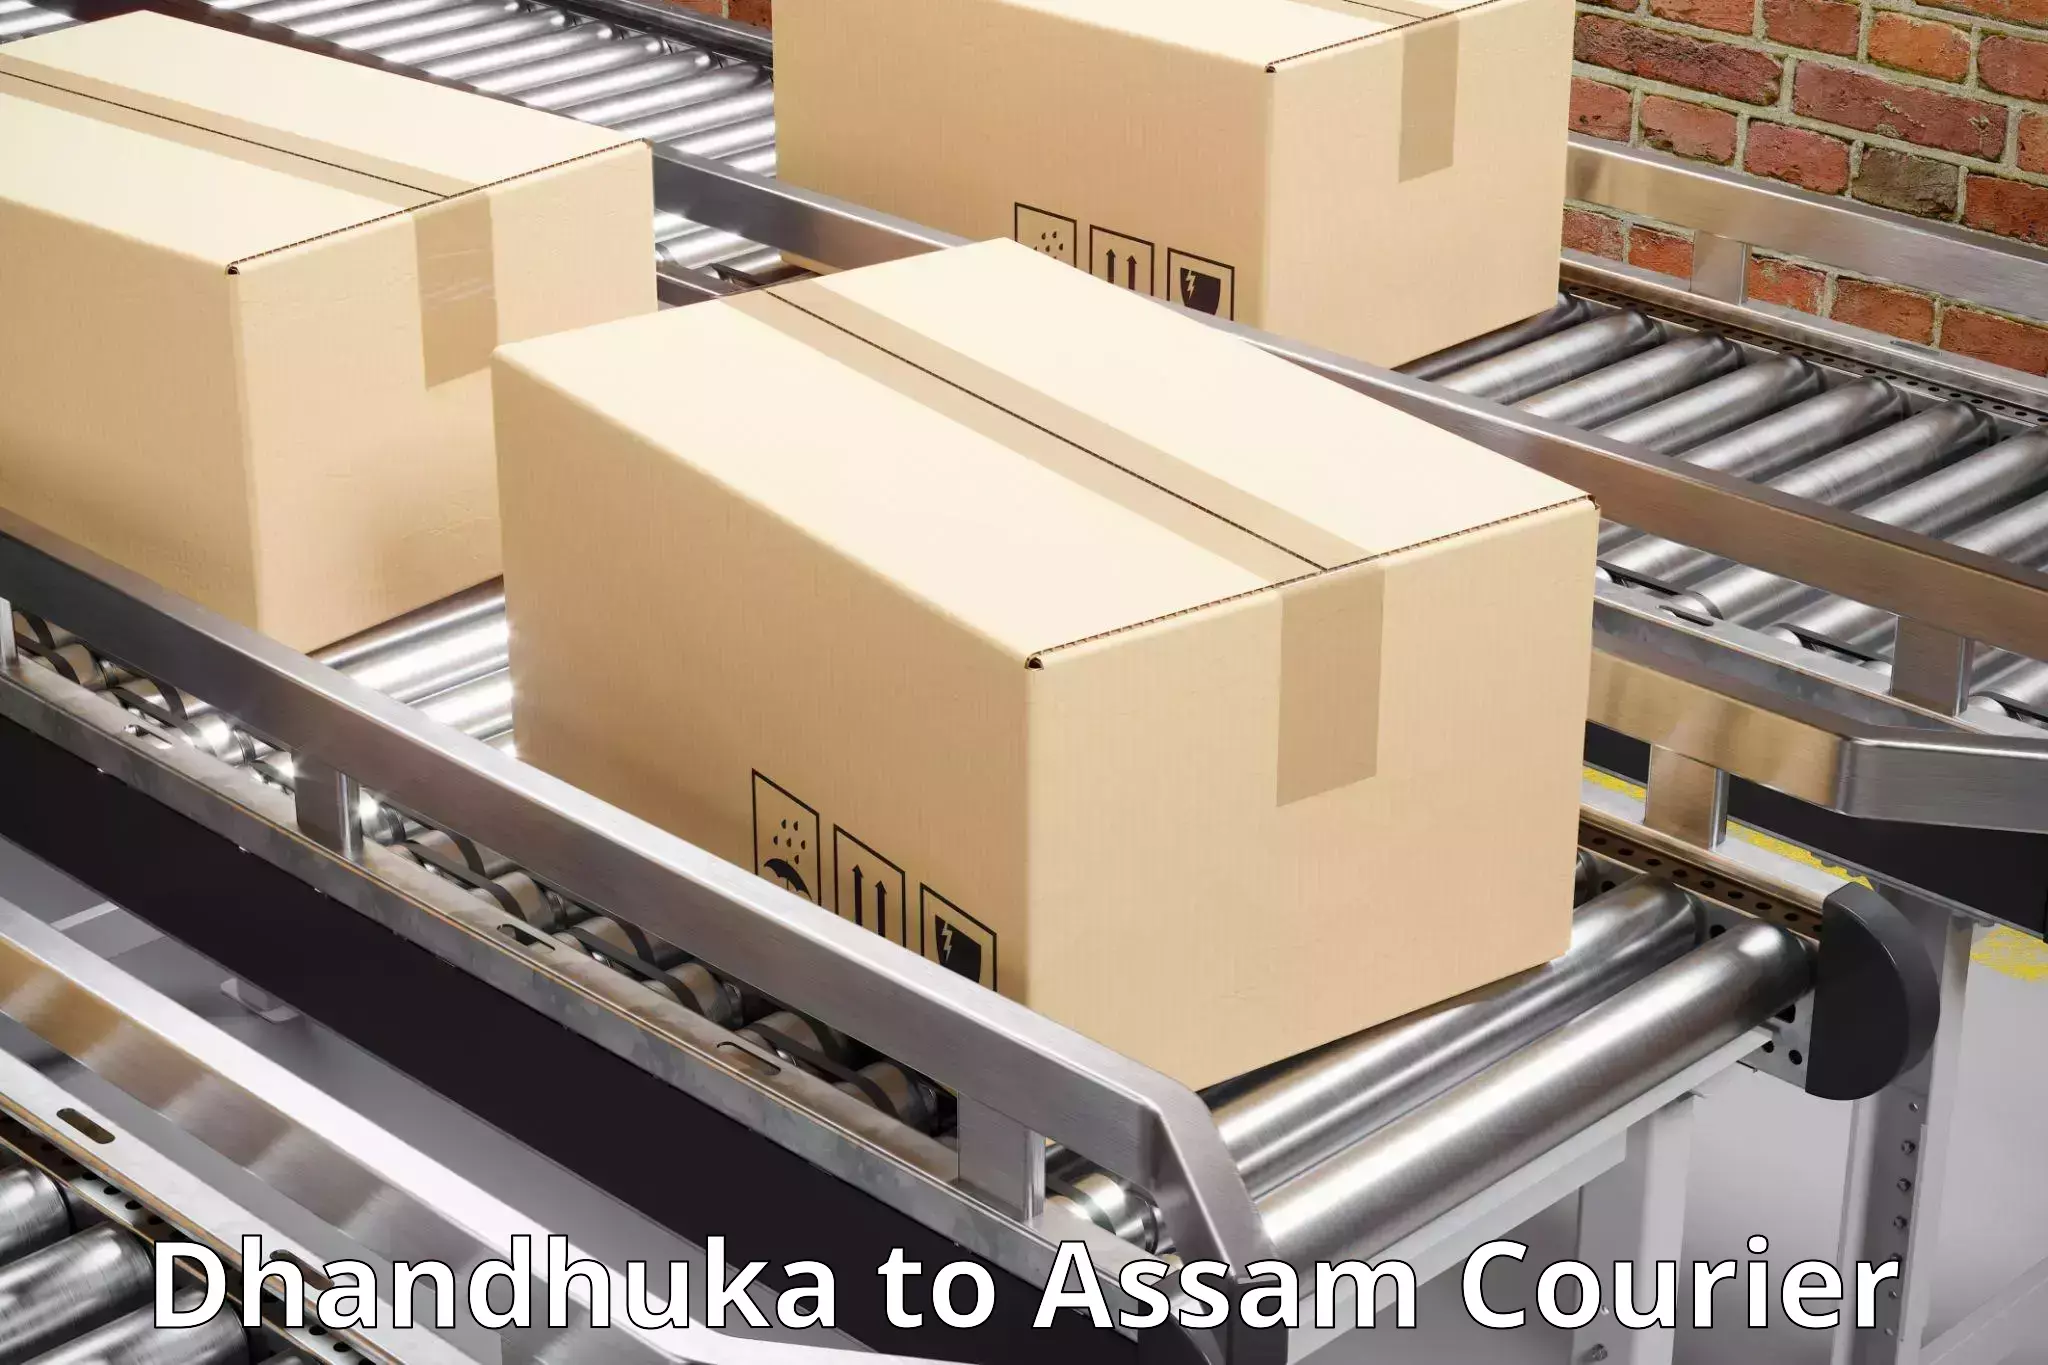 On-demand shipping options Dhandhuka to Mirza Kamrup